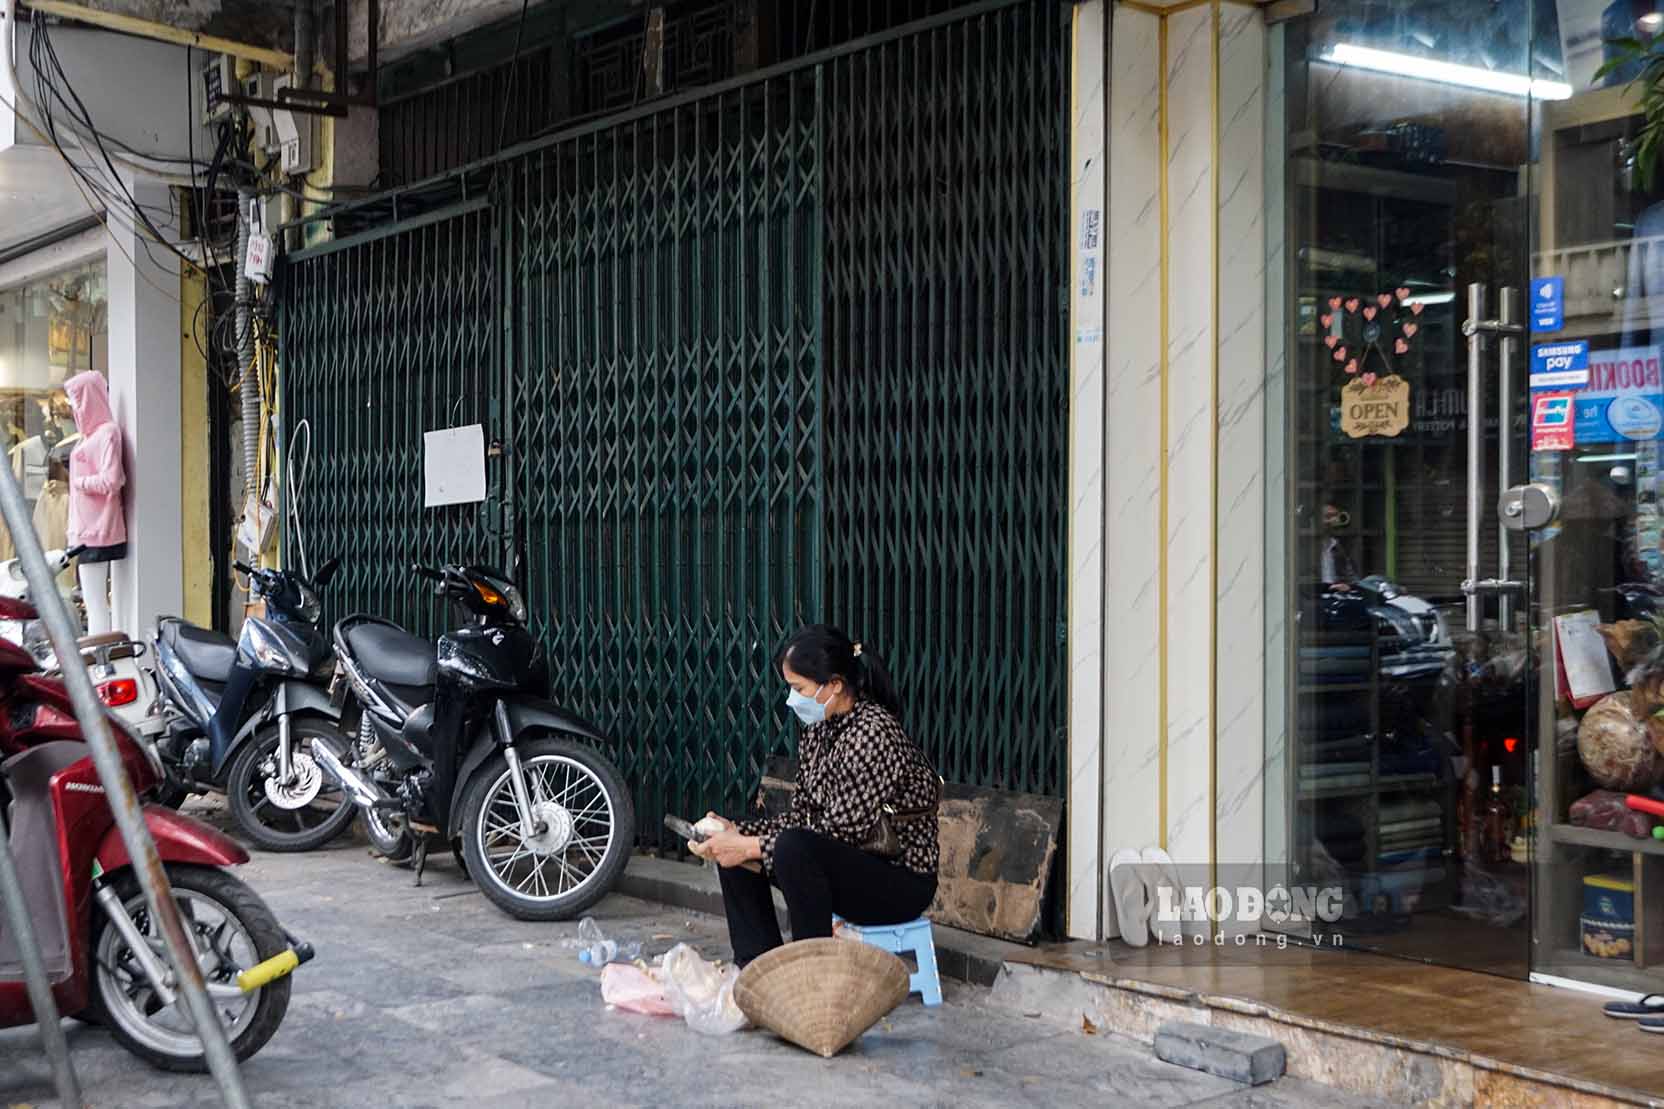 Trên phố Hàng Bông (Hoàn Kiếm), nhiều cửa hàng kinh doanh ảm đạm, đan xen là các ngôi nhà “kín cổng cao tường” chưa tìm được người thuê.